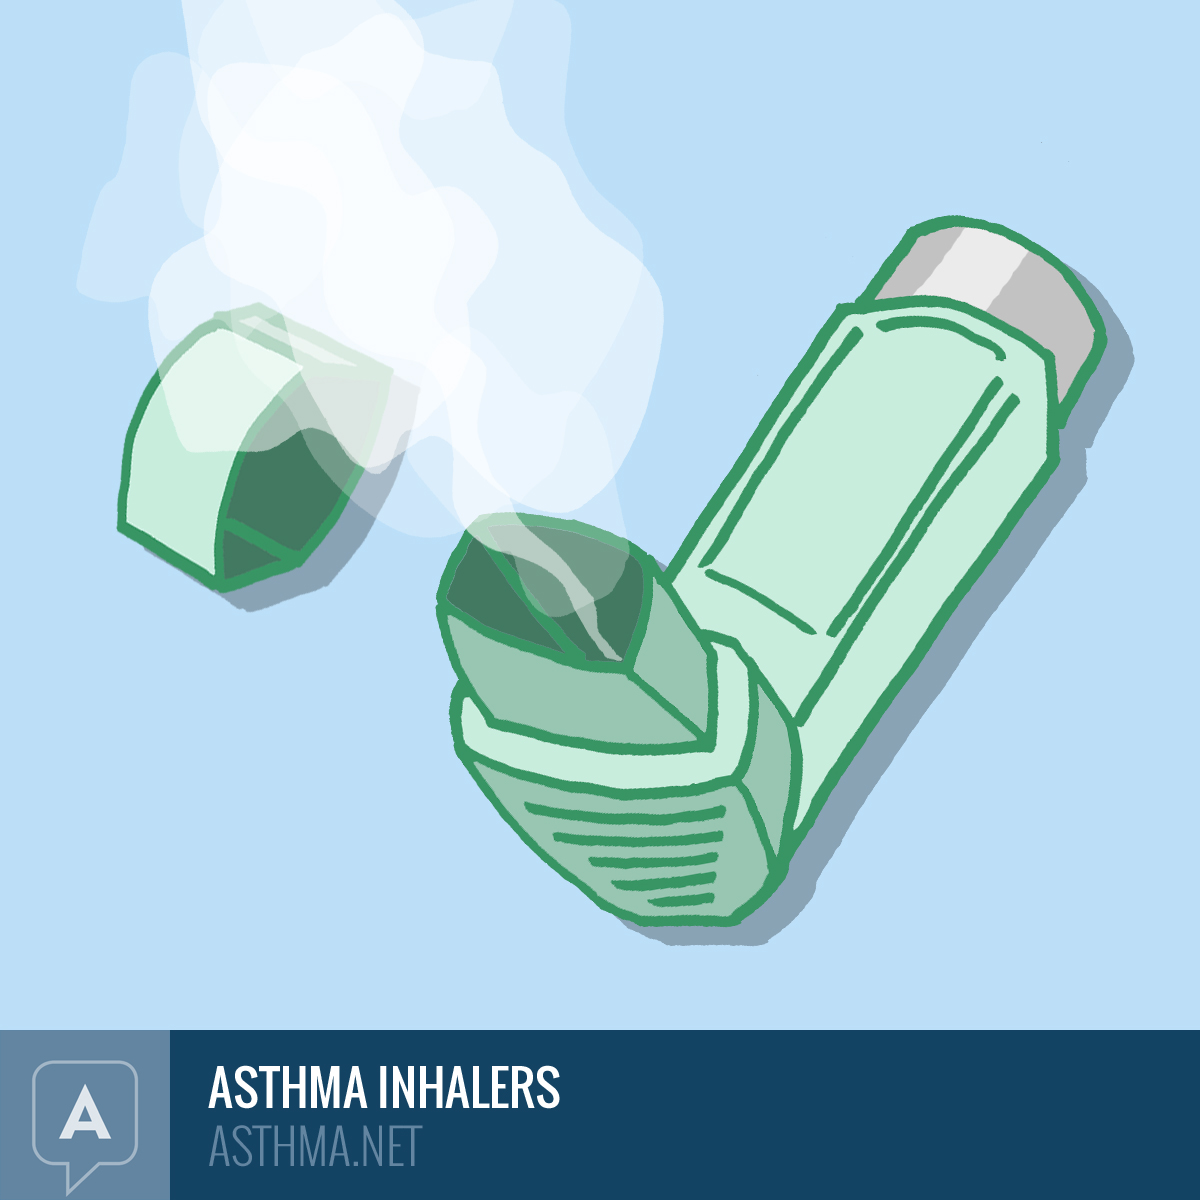 Metered dose inhaler